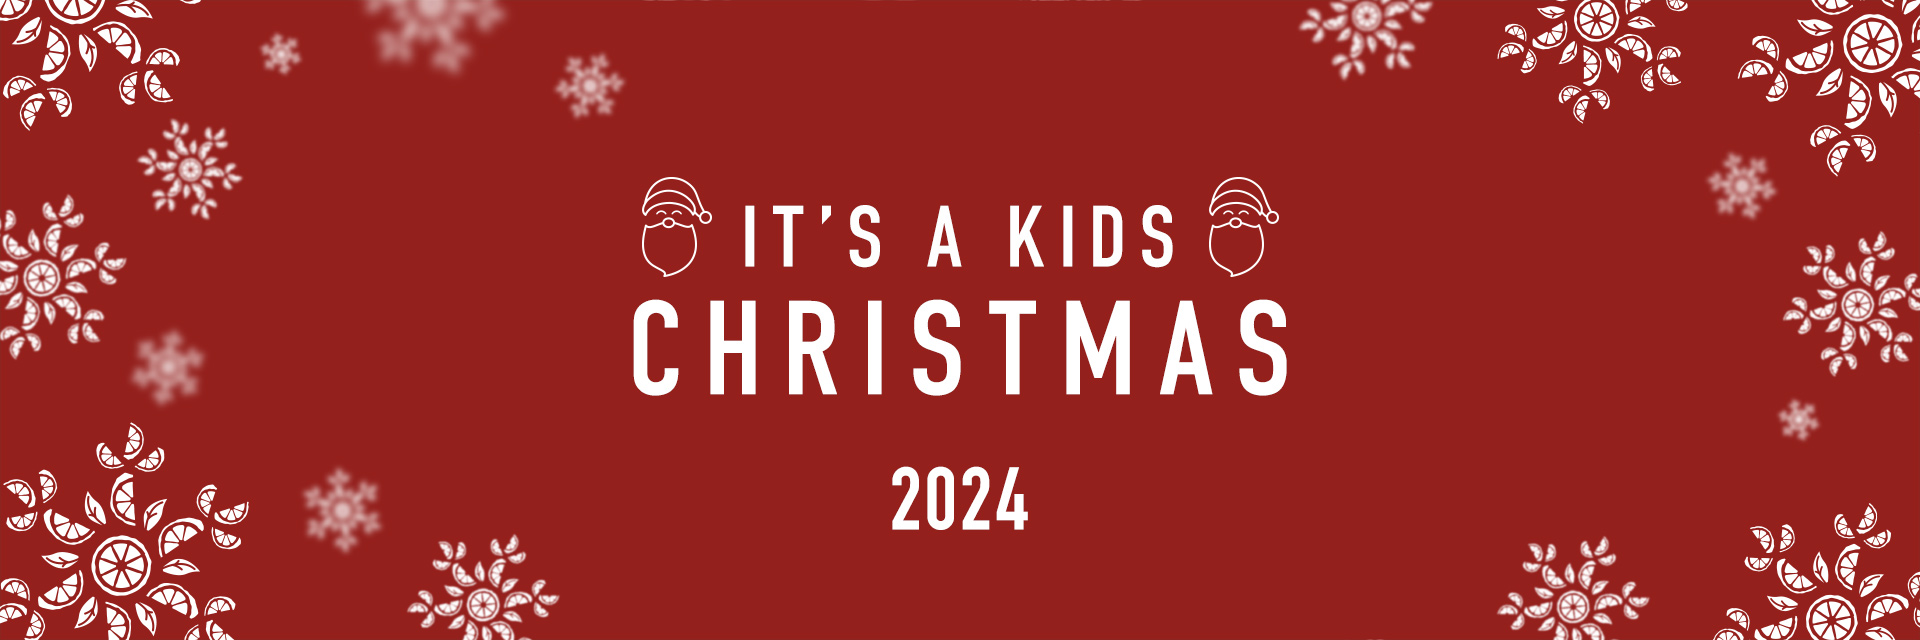 Kids Christmas Menu 2024 at The Ancient Briton